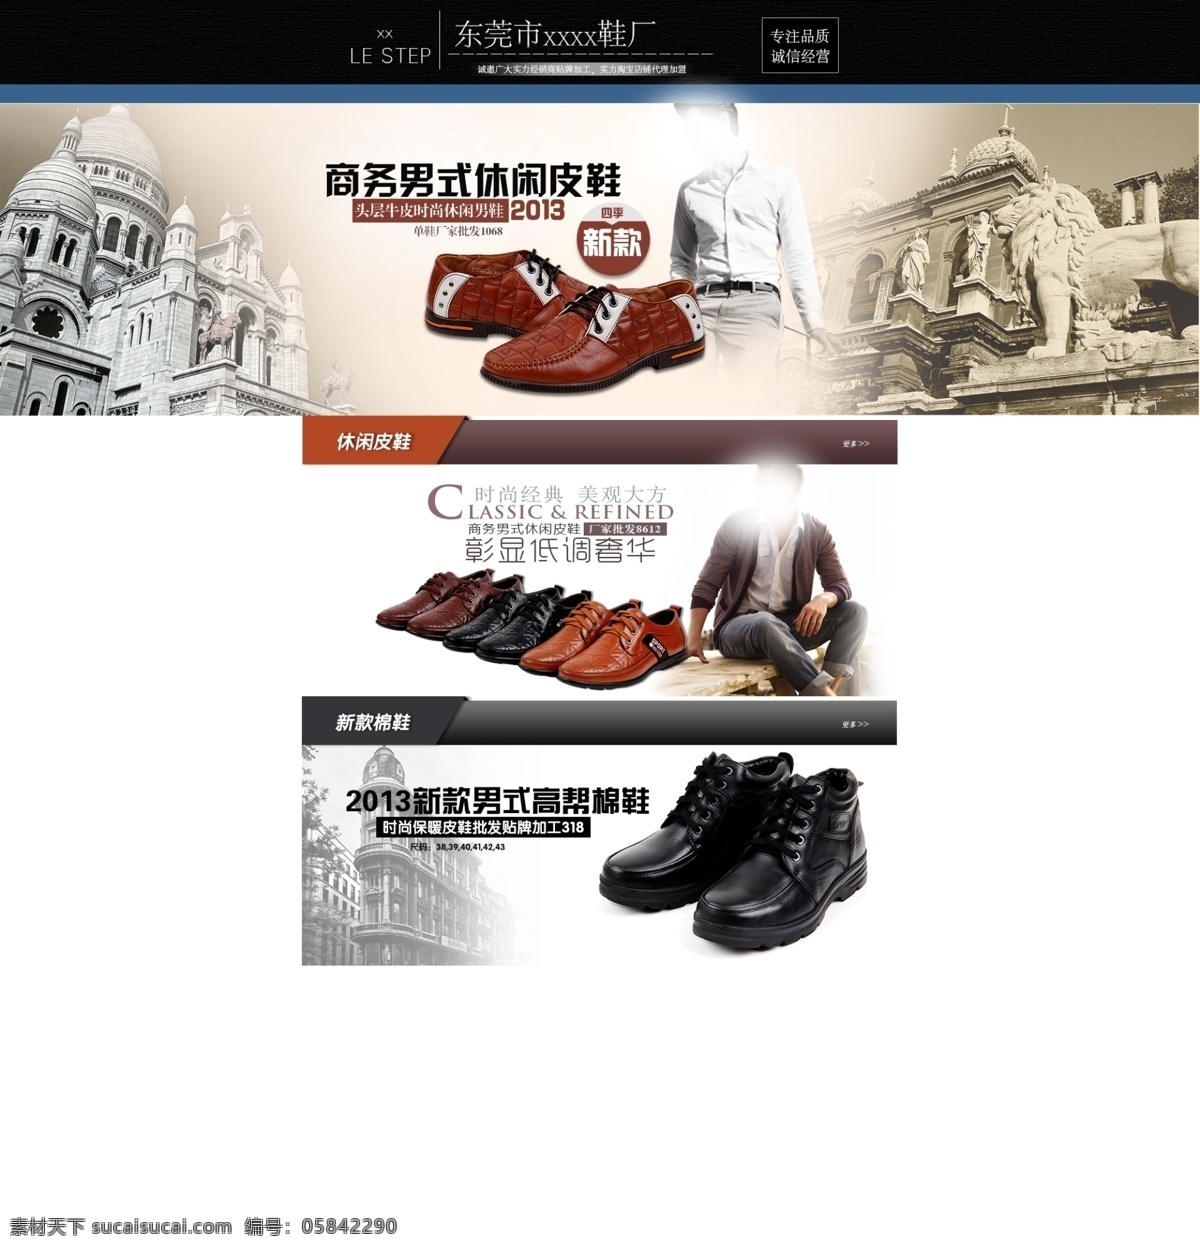 高端 经典 皮鞋 时尚 网页模板 源文件 中文模板 大气 店铺 装修 模板下载 网页素材